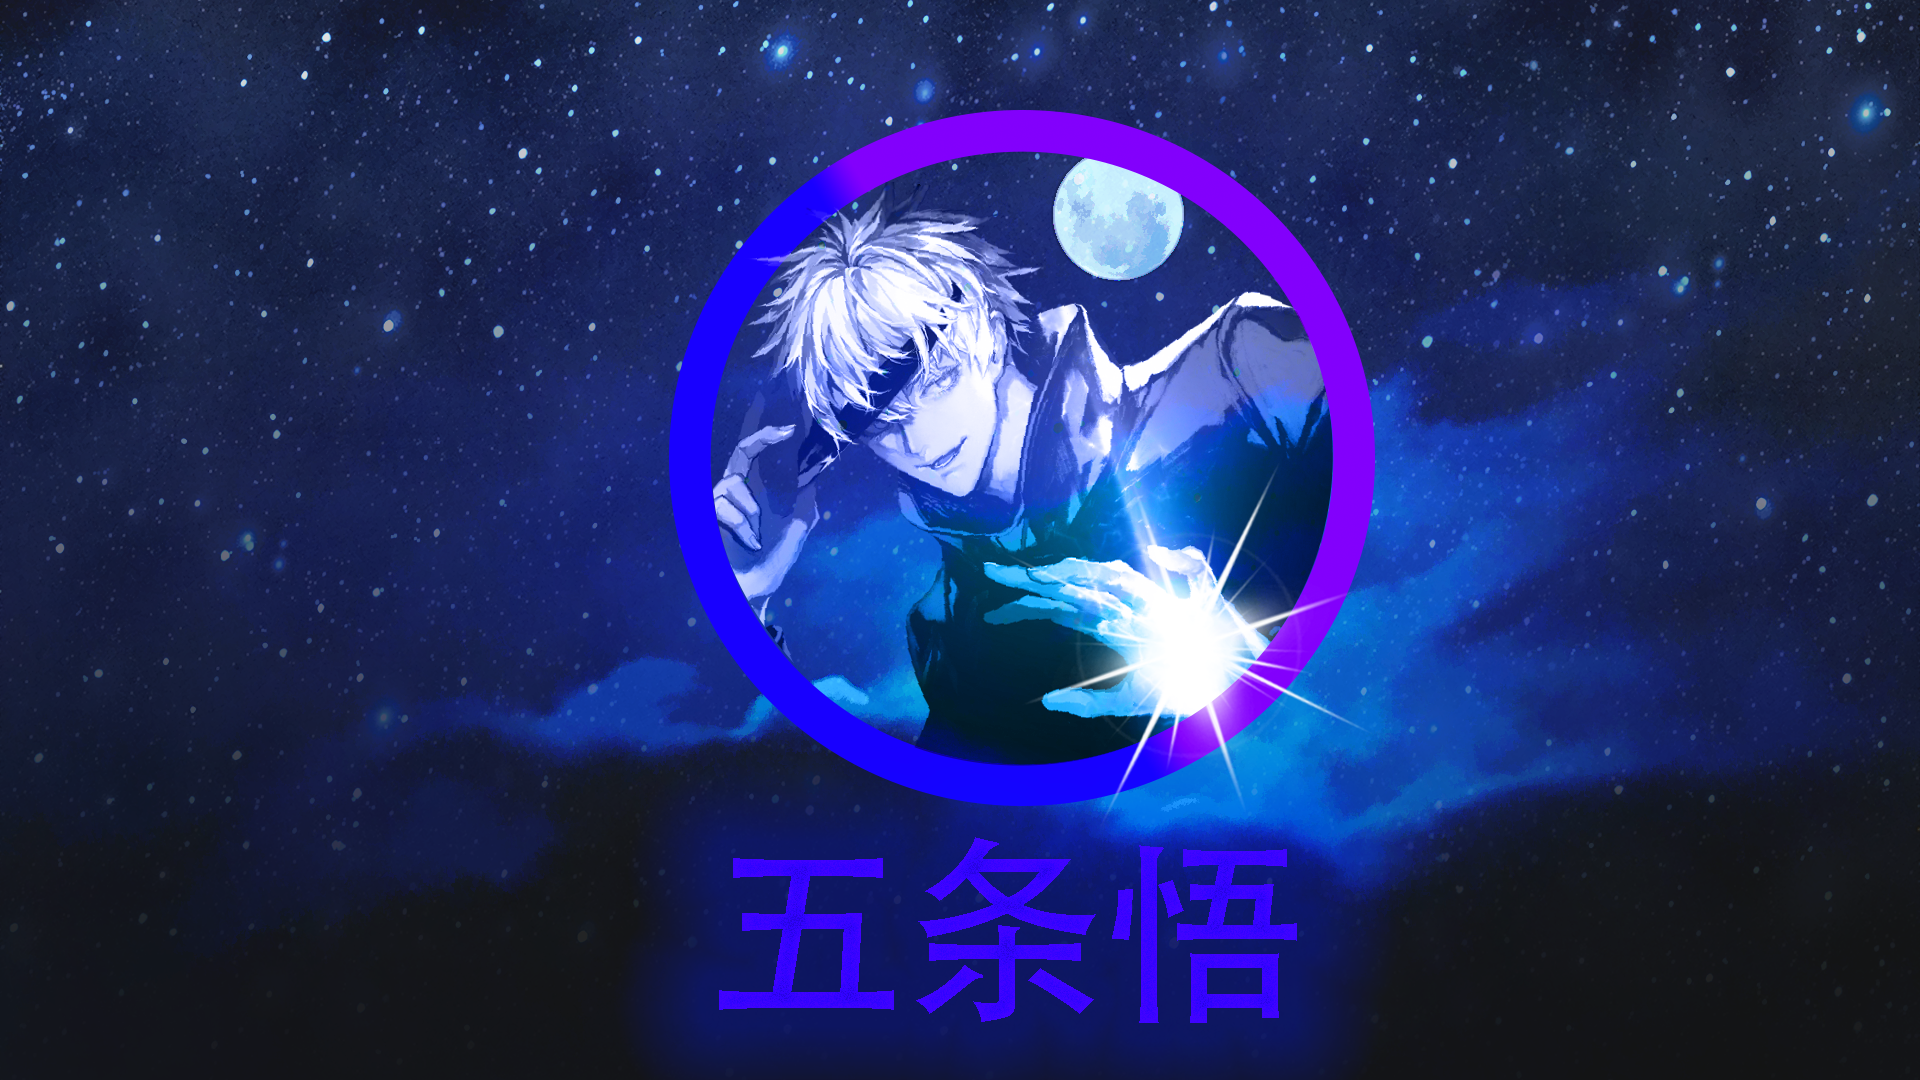 Anime 1920x1080 Satoru Gojo night sky Shining Star Darkmoon blue purple background Jujutsu Kaisen